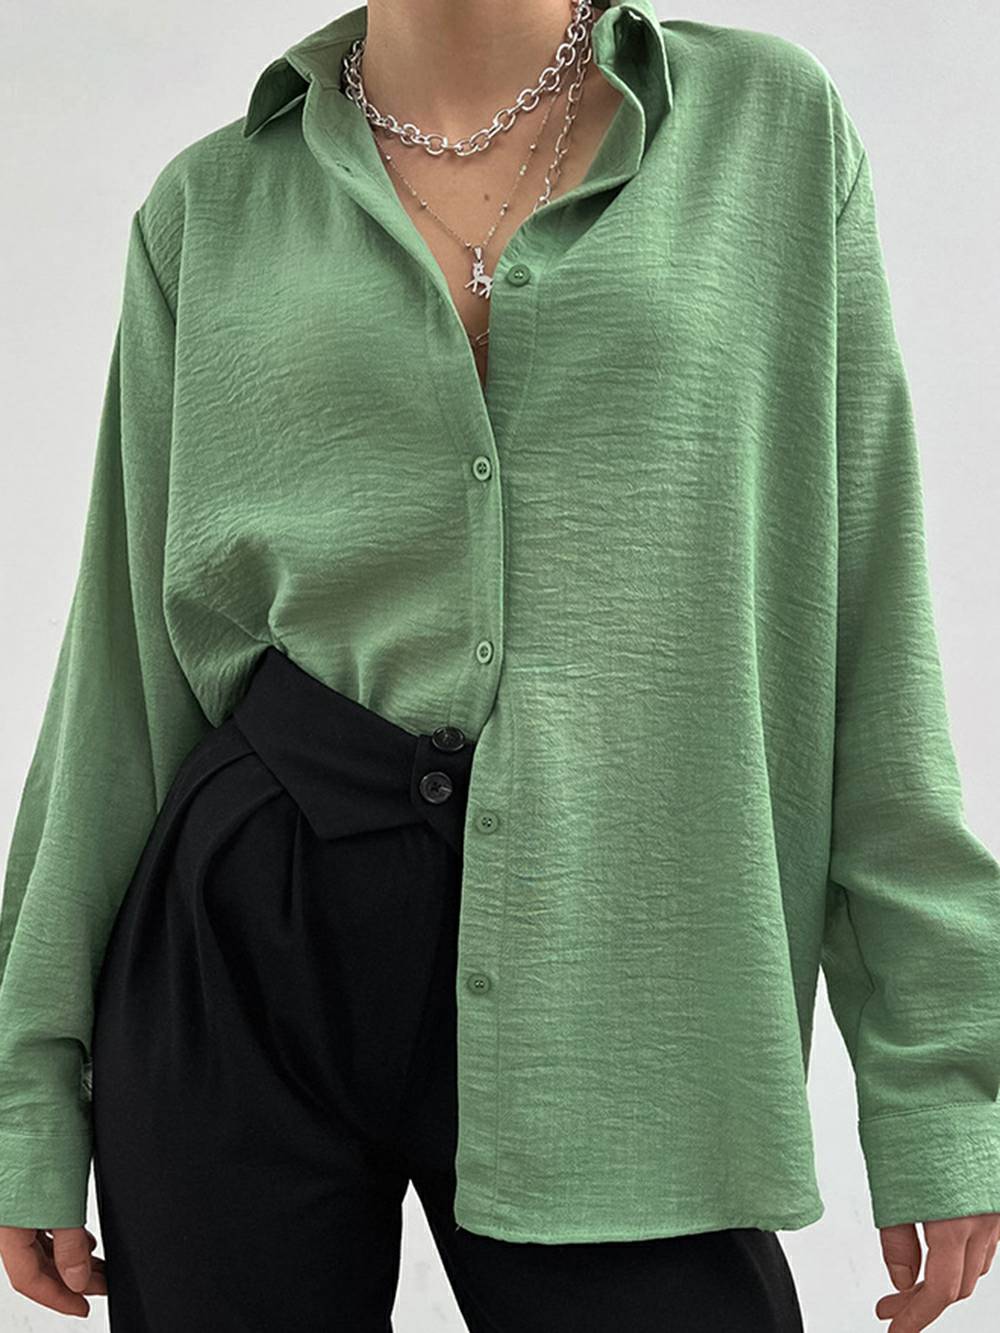 Γυναικείο πουκάμισο με γιακά με μονό στήθος, ψηλό, casual μακρυμάνικο